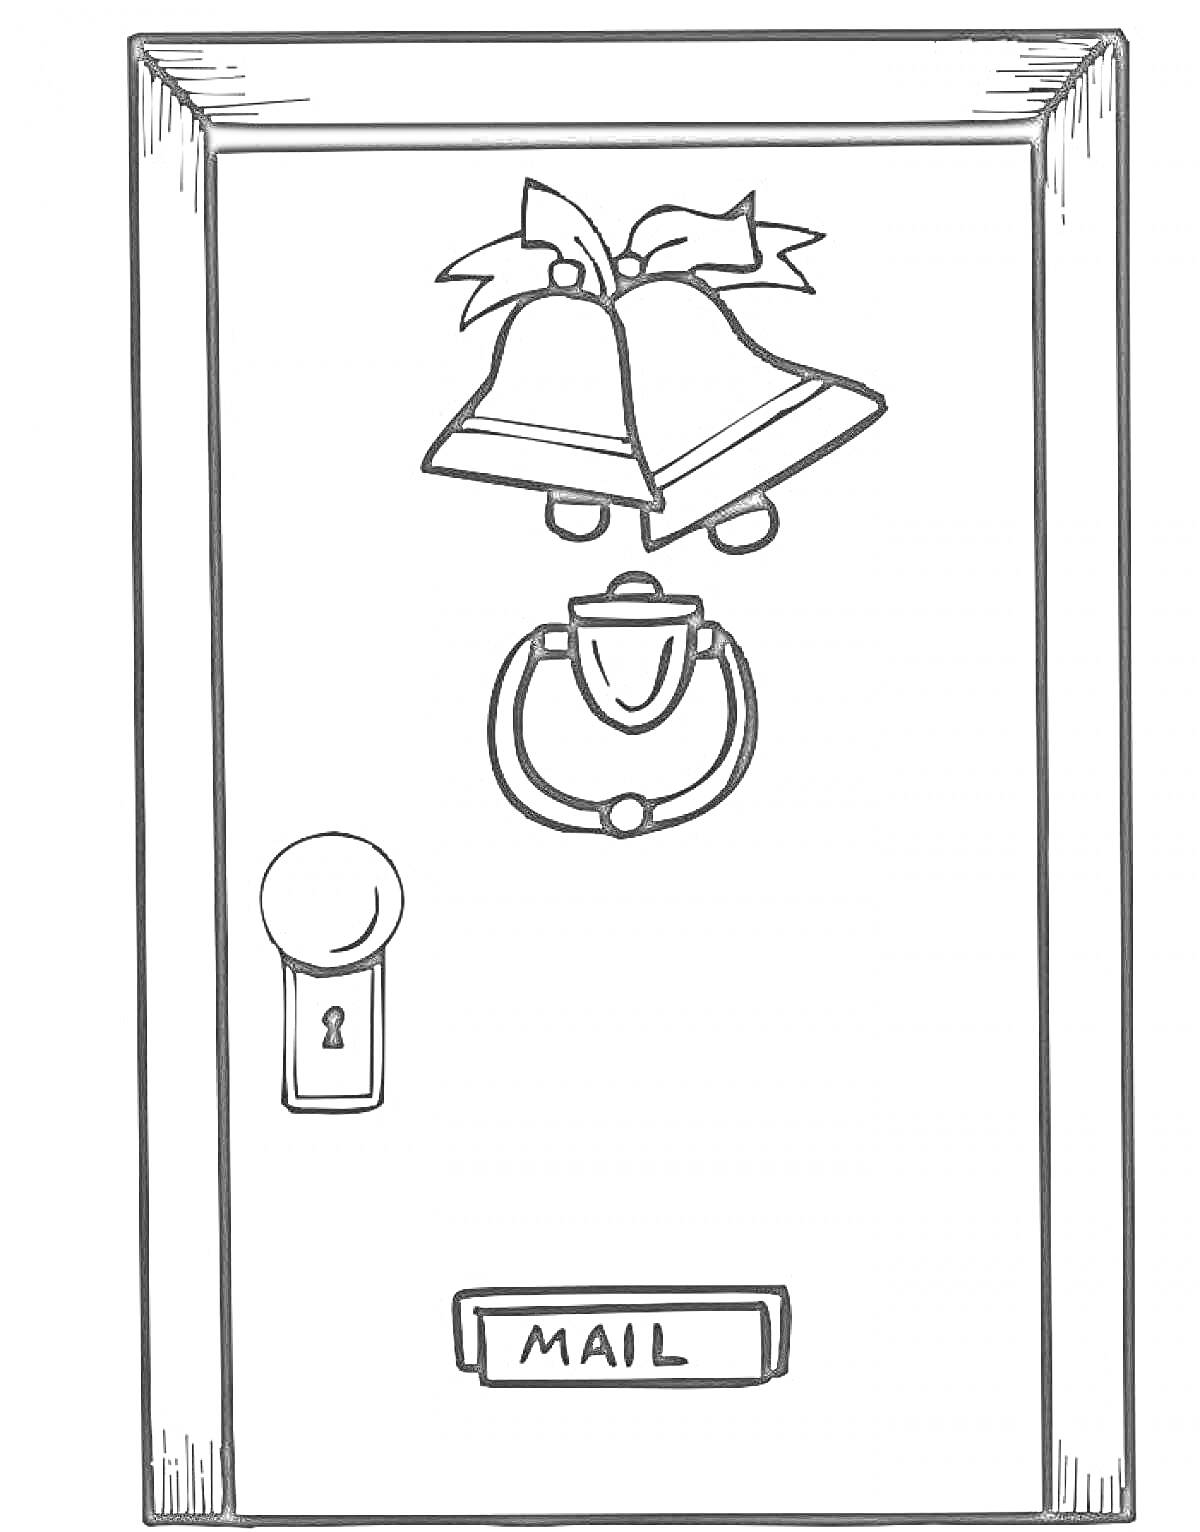 Дверь с колокольчиками, дверным молоточком, замочной скважиной и почтовым ящиком